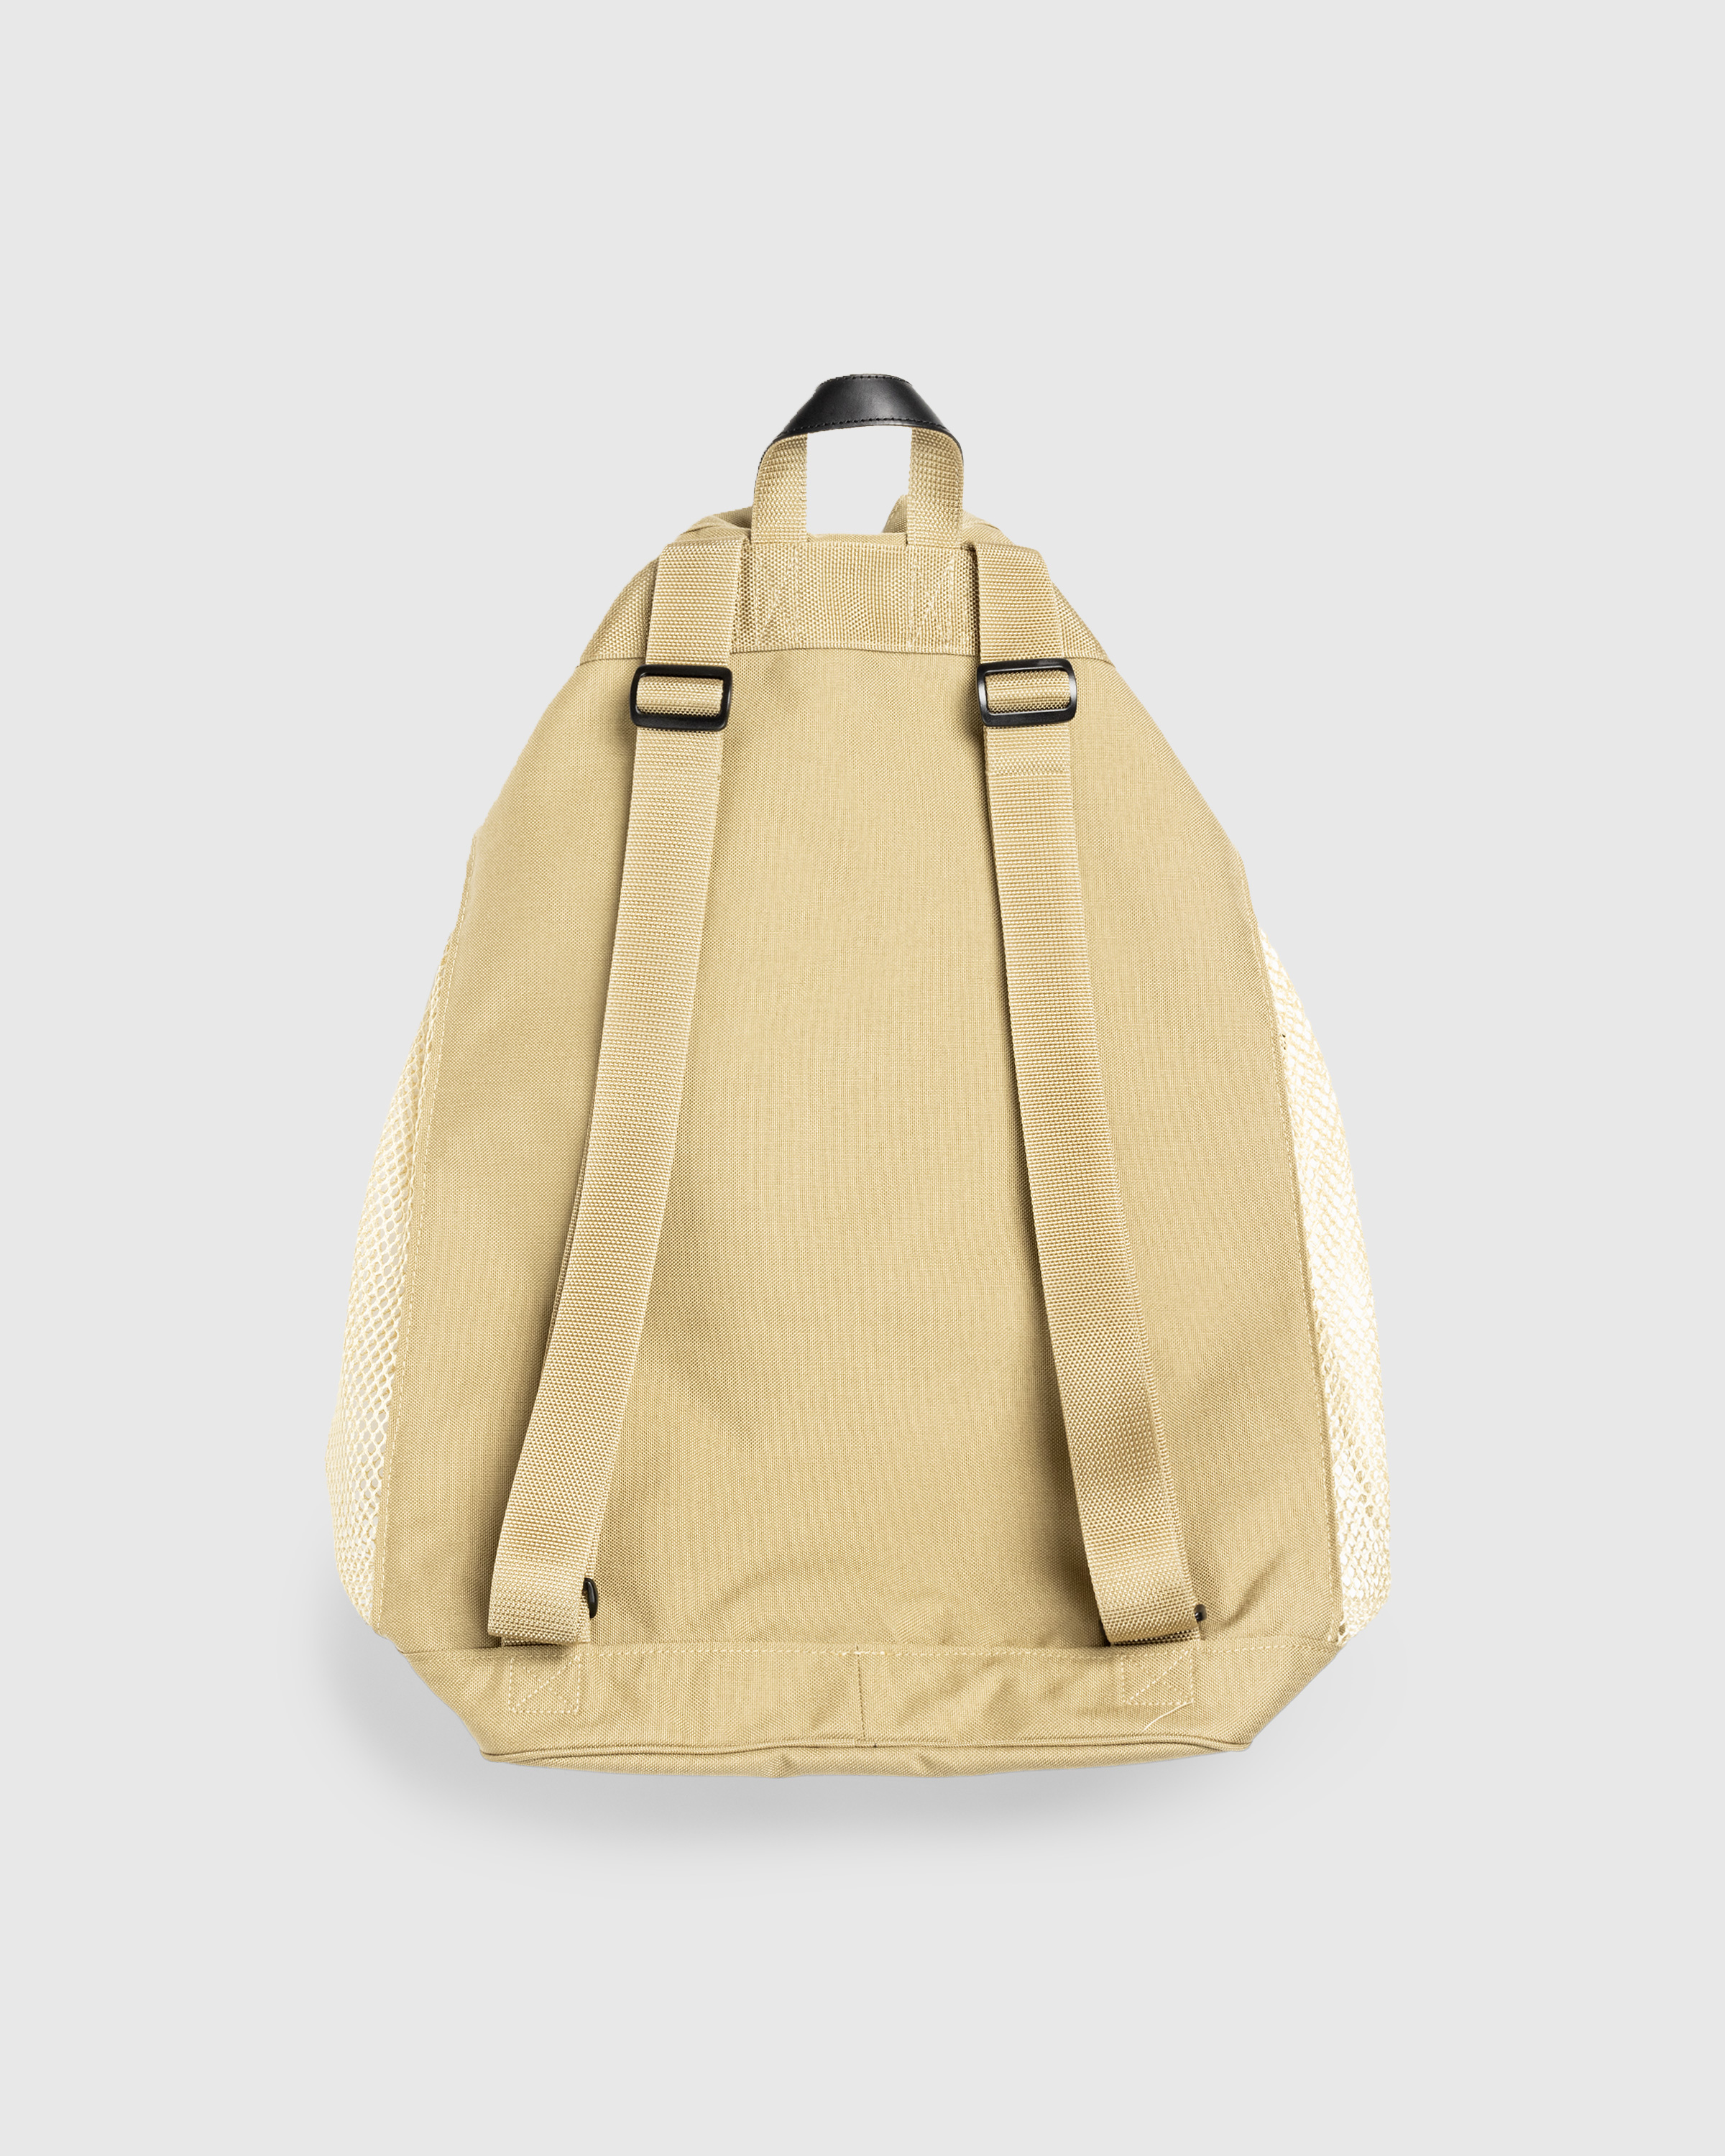 Auralee – Mesh Large Backpack Made By Aeta Beige - Bags - Beige - Image 3